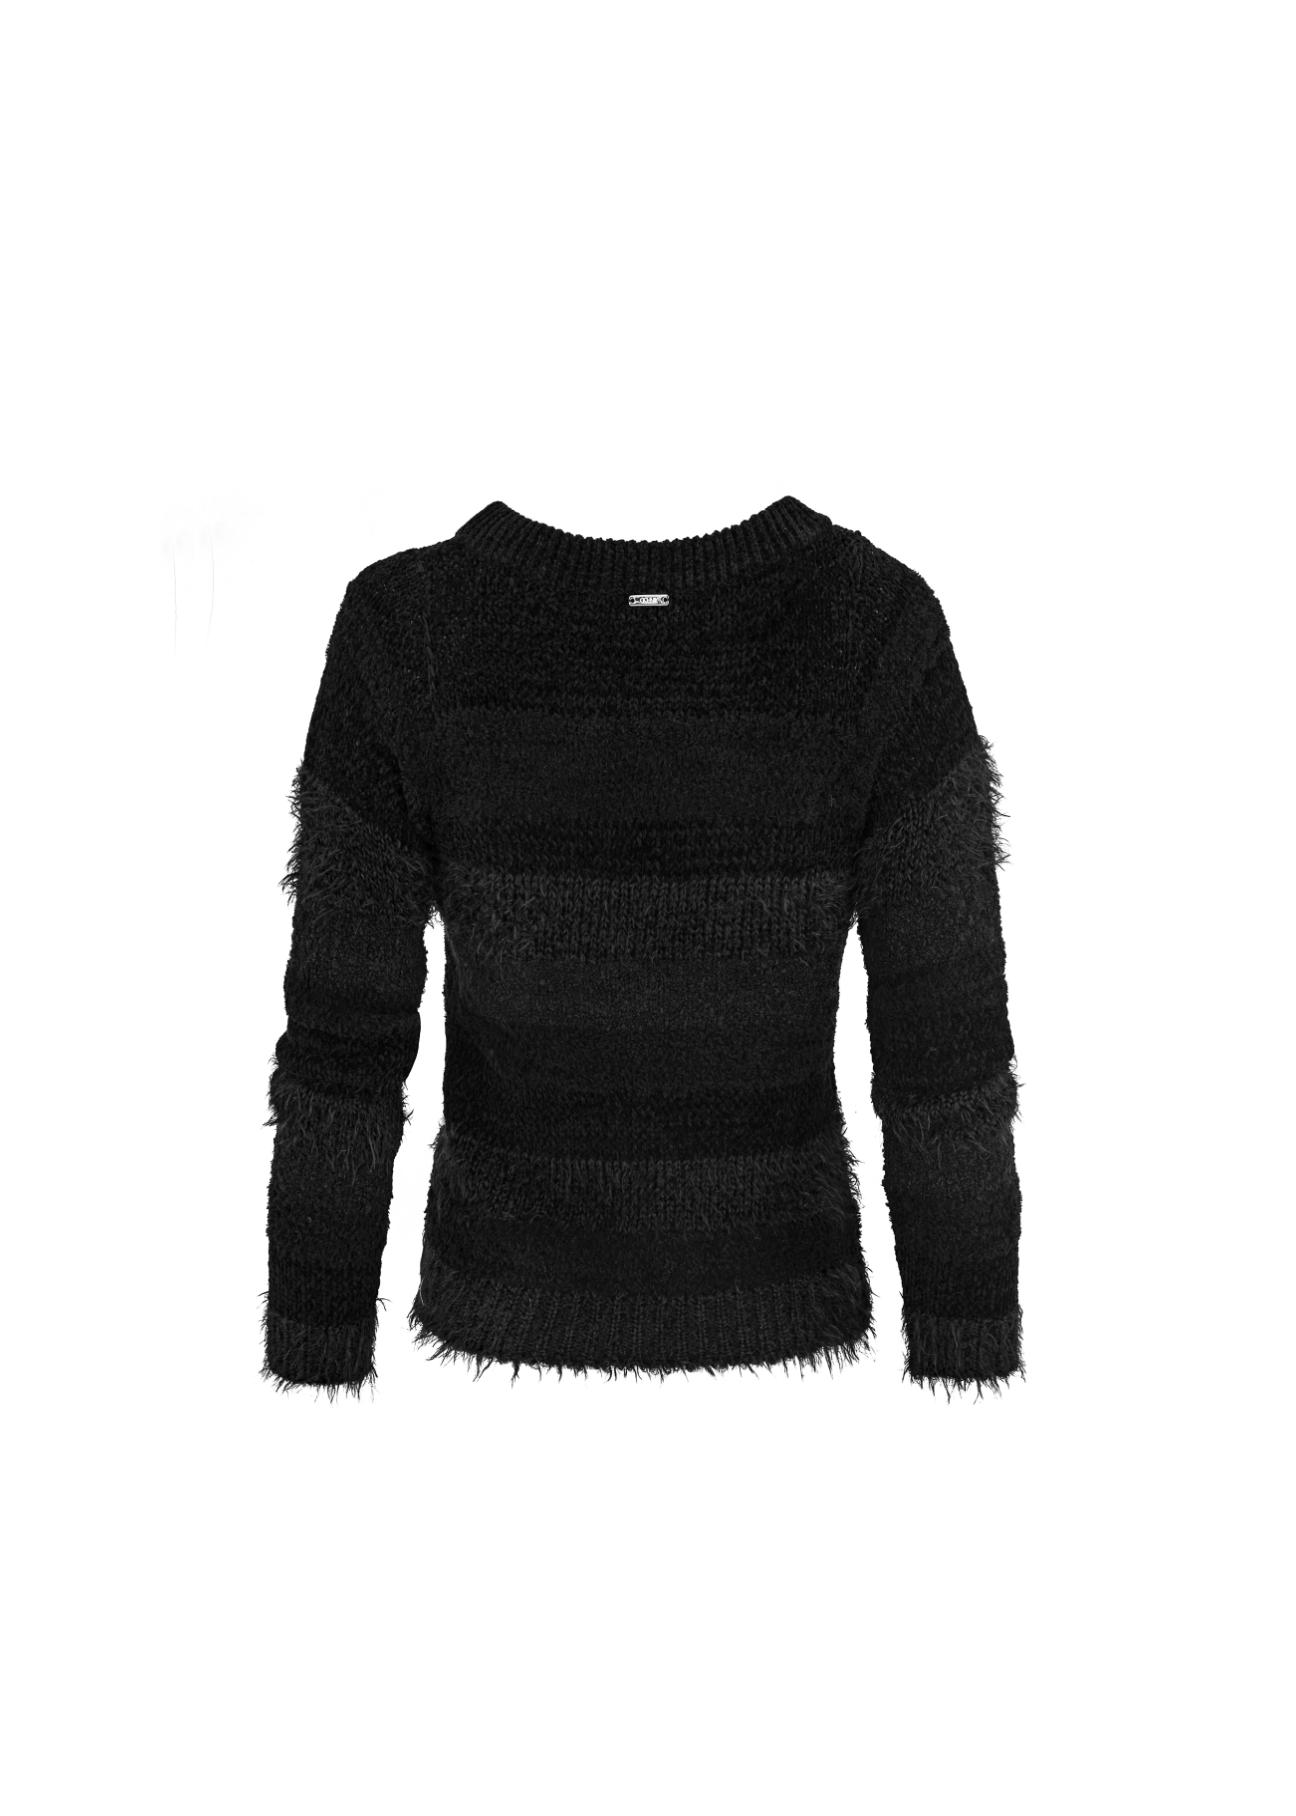 Czarny sweter damski SWEDT-0064-99(Z18)